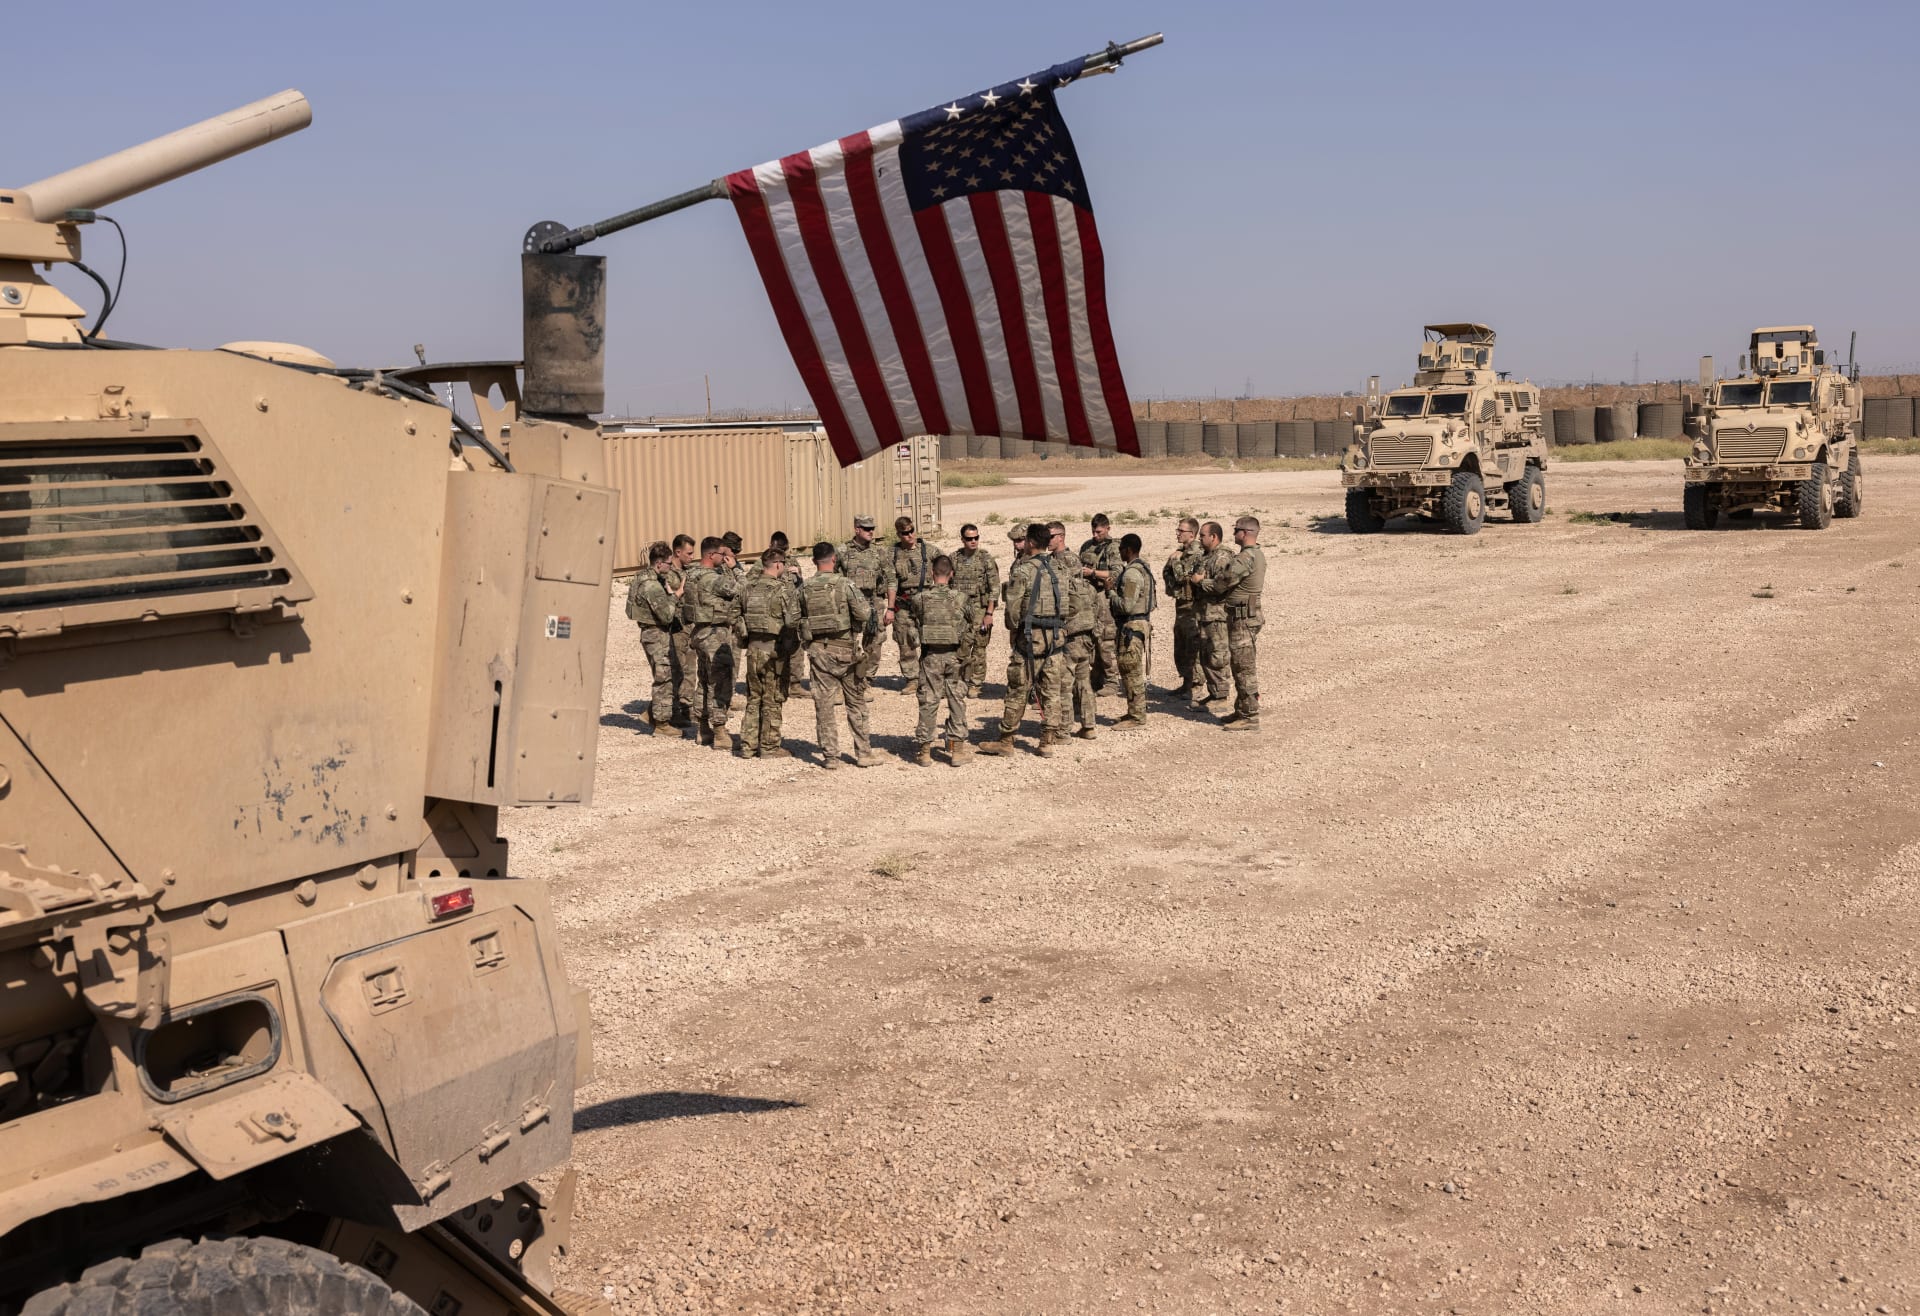  الجيش الأمريكي يعلن حصيلة هجماته ضد "داعش" في سوريا والعراق خلال فبراير